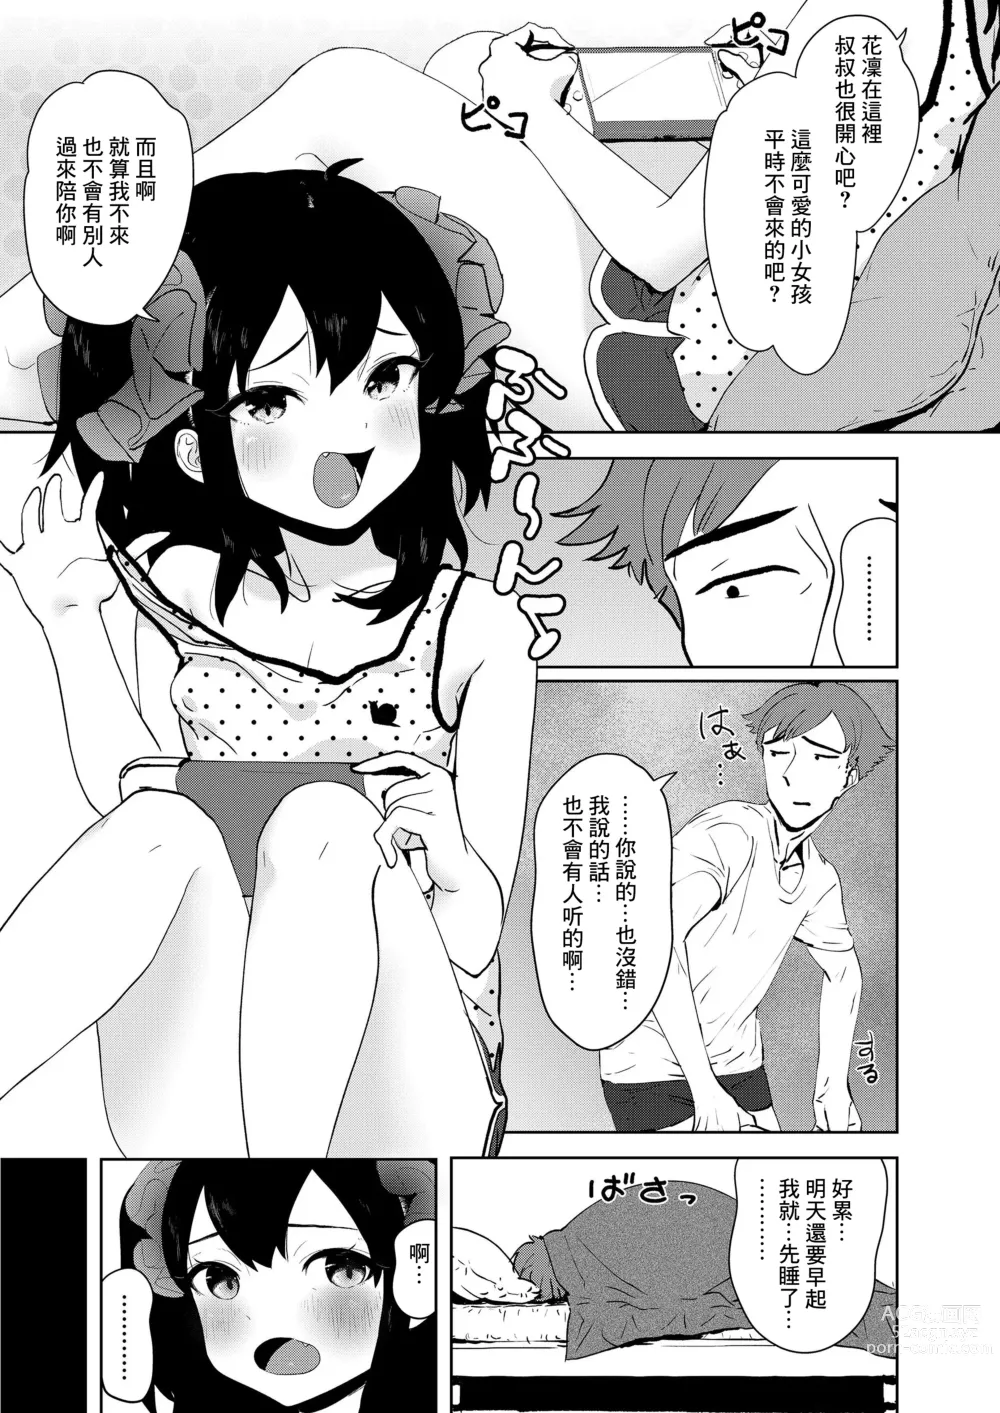 Page 3 of manga Meikko Mama ni Naru!